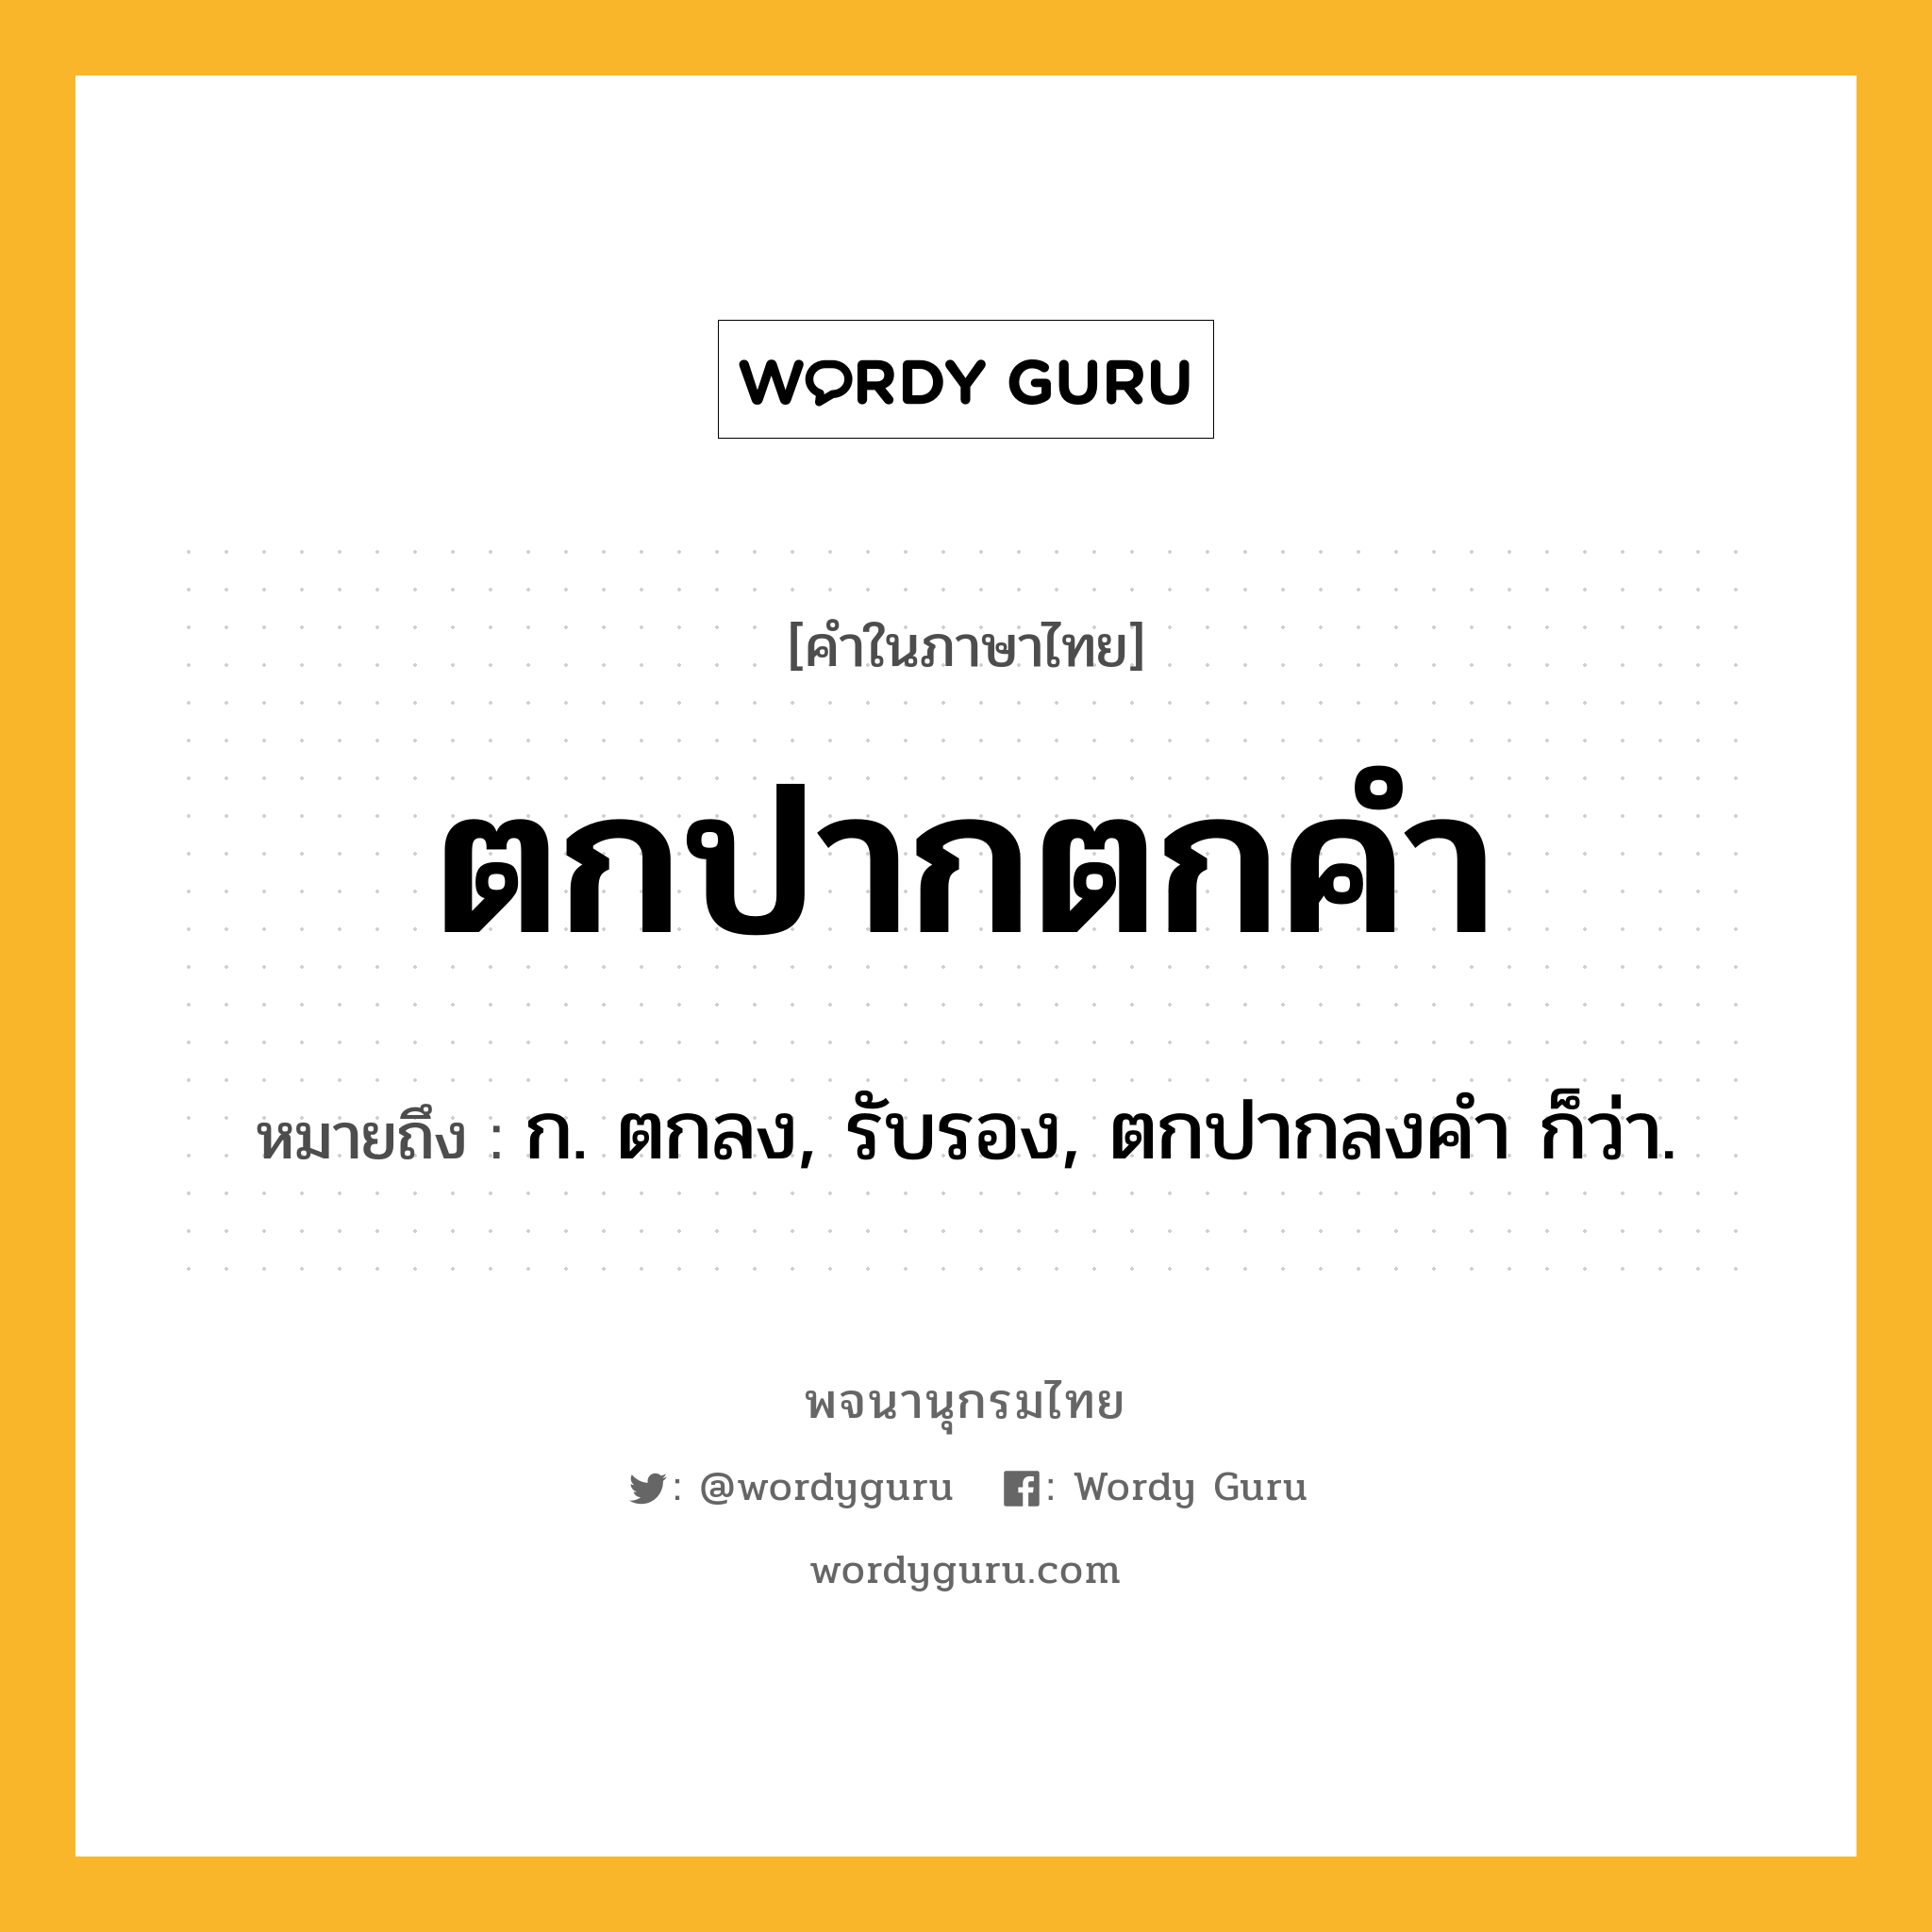 ตกปากตกคำ ความหมาย หมายถึงอะไร?, คำในภาษาไทย ตกปากตกคำ หมายถึง ก. ตกลง, รับรอง, ตกปากลงคํา ก็ว่า.